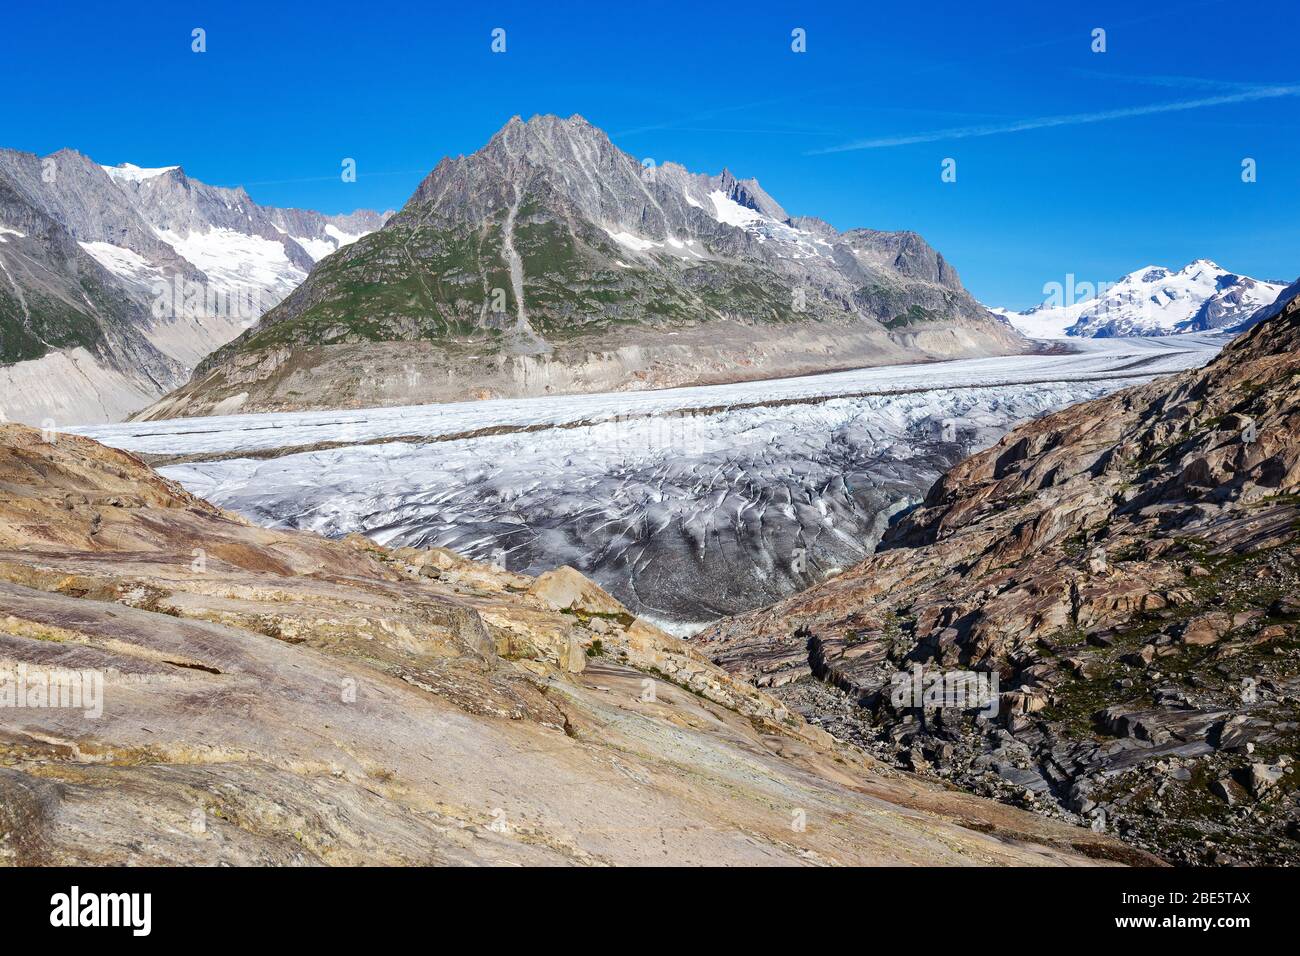 Le glacier d'Aletsch. Aletschgletscher. Roches lisses. Alpes bernoises de l'est dans le canton suisse du Valais. Suisse. Banque D'Images